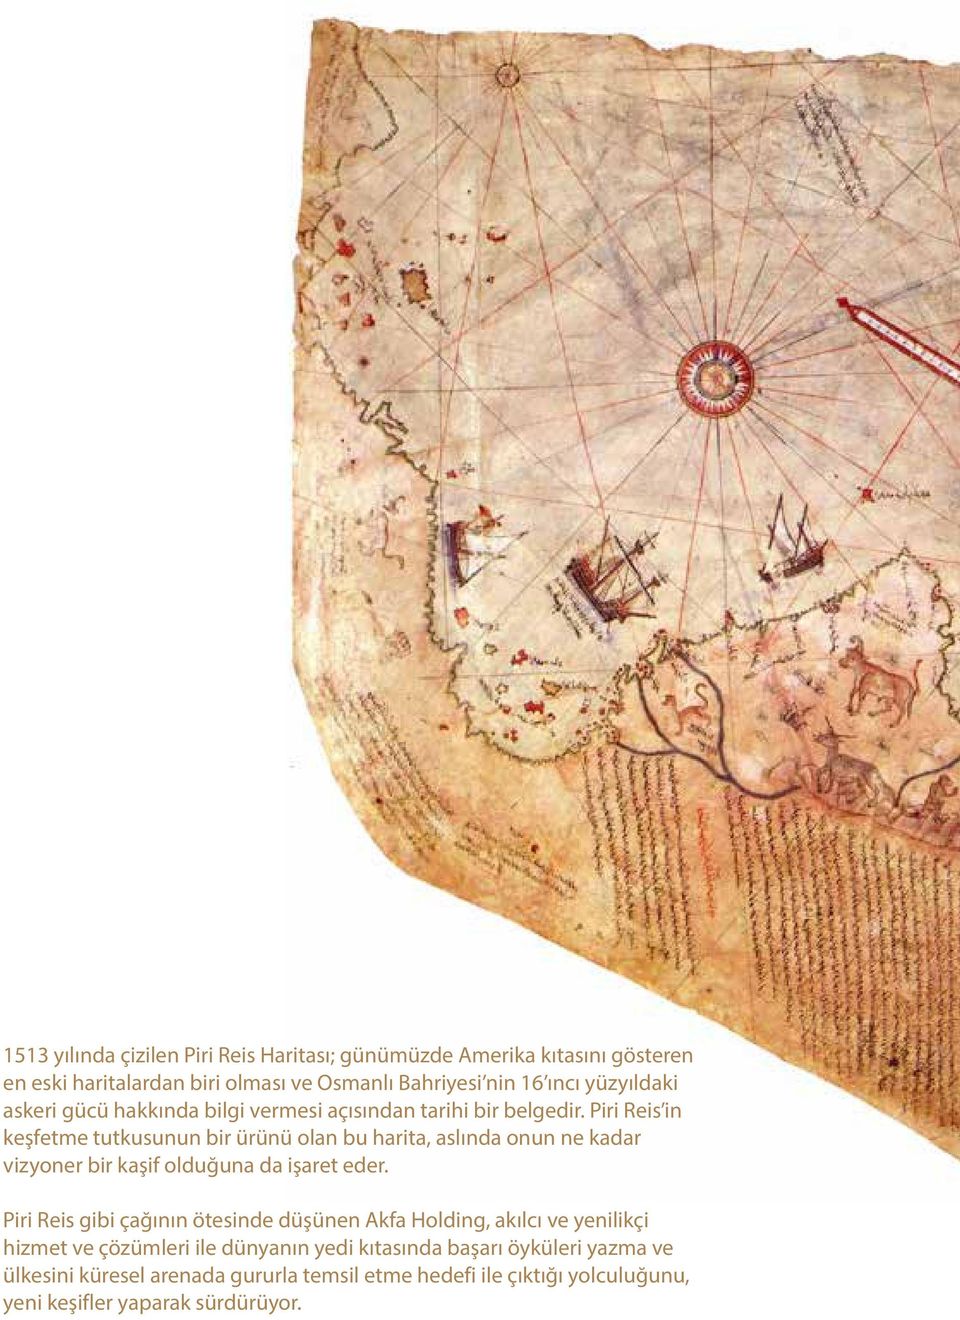 Piri Reis in keşfetme tutkusunun bir ürünü olan bu harita, aslında onun ne kadar vizyoner bir kaşif olduğuna da işaret eder.